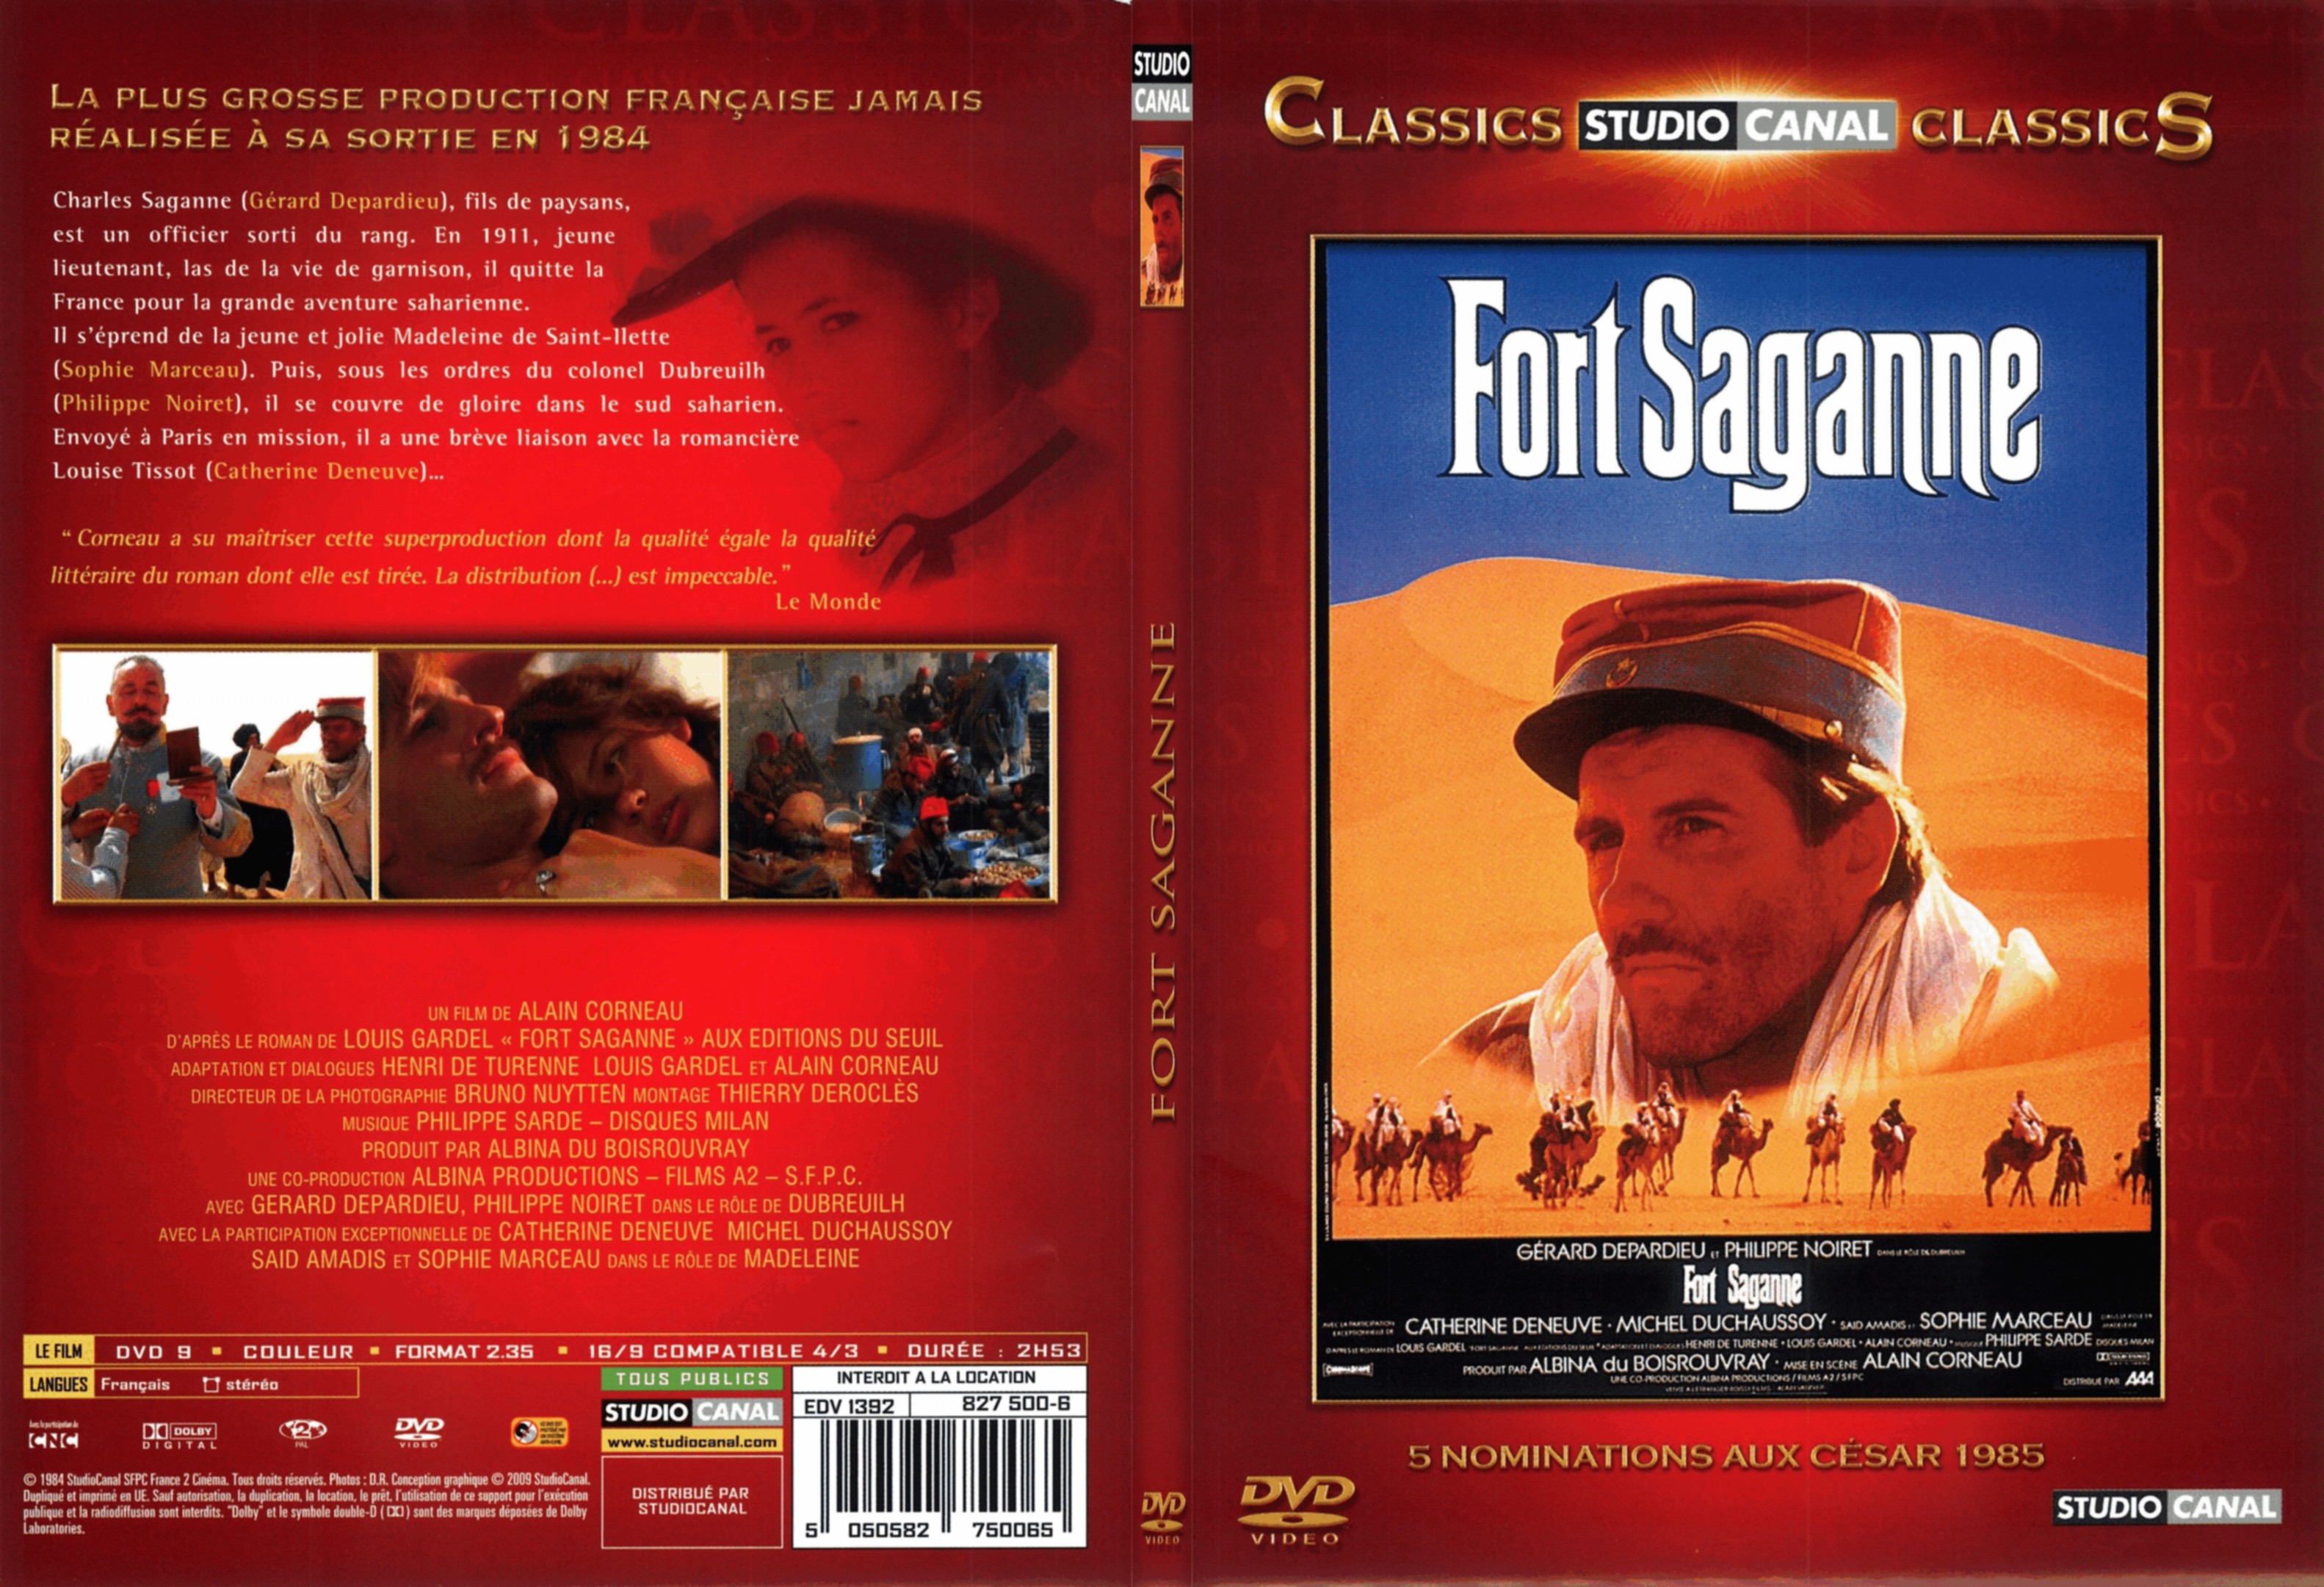 Jaquette DVD Fort saganne - SLIM